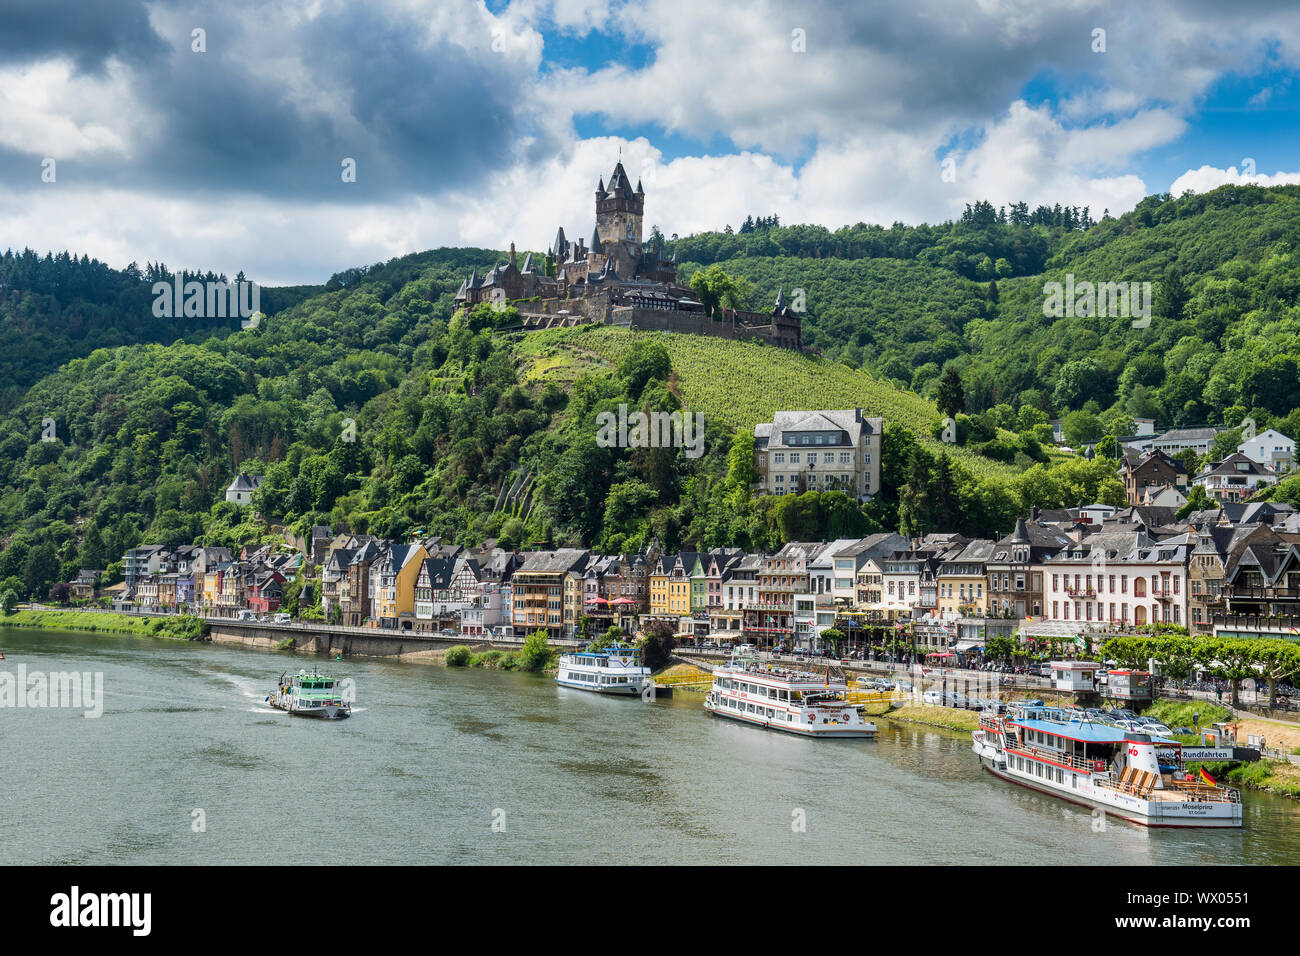 Le château impérial de Cochem sur la Moselle, vallée de la Moselle, Rhénanie-Palatinat, Allemagne, Europe Banque D'Images